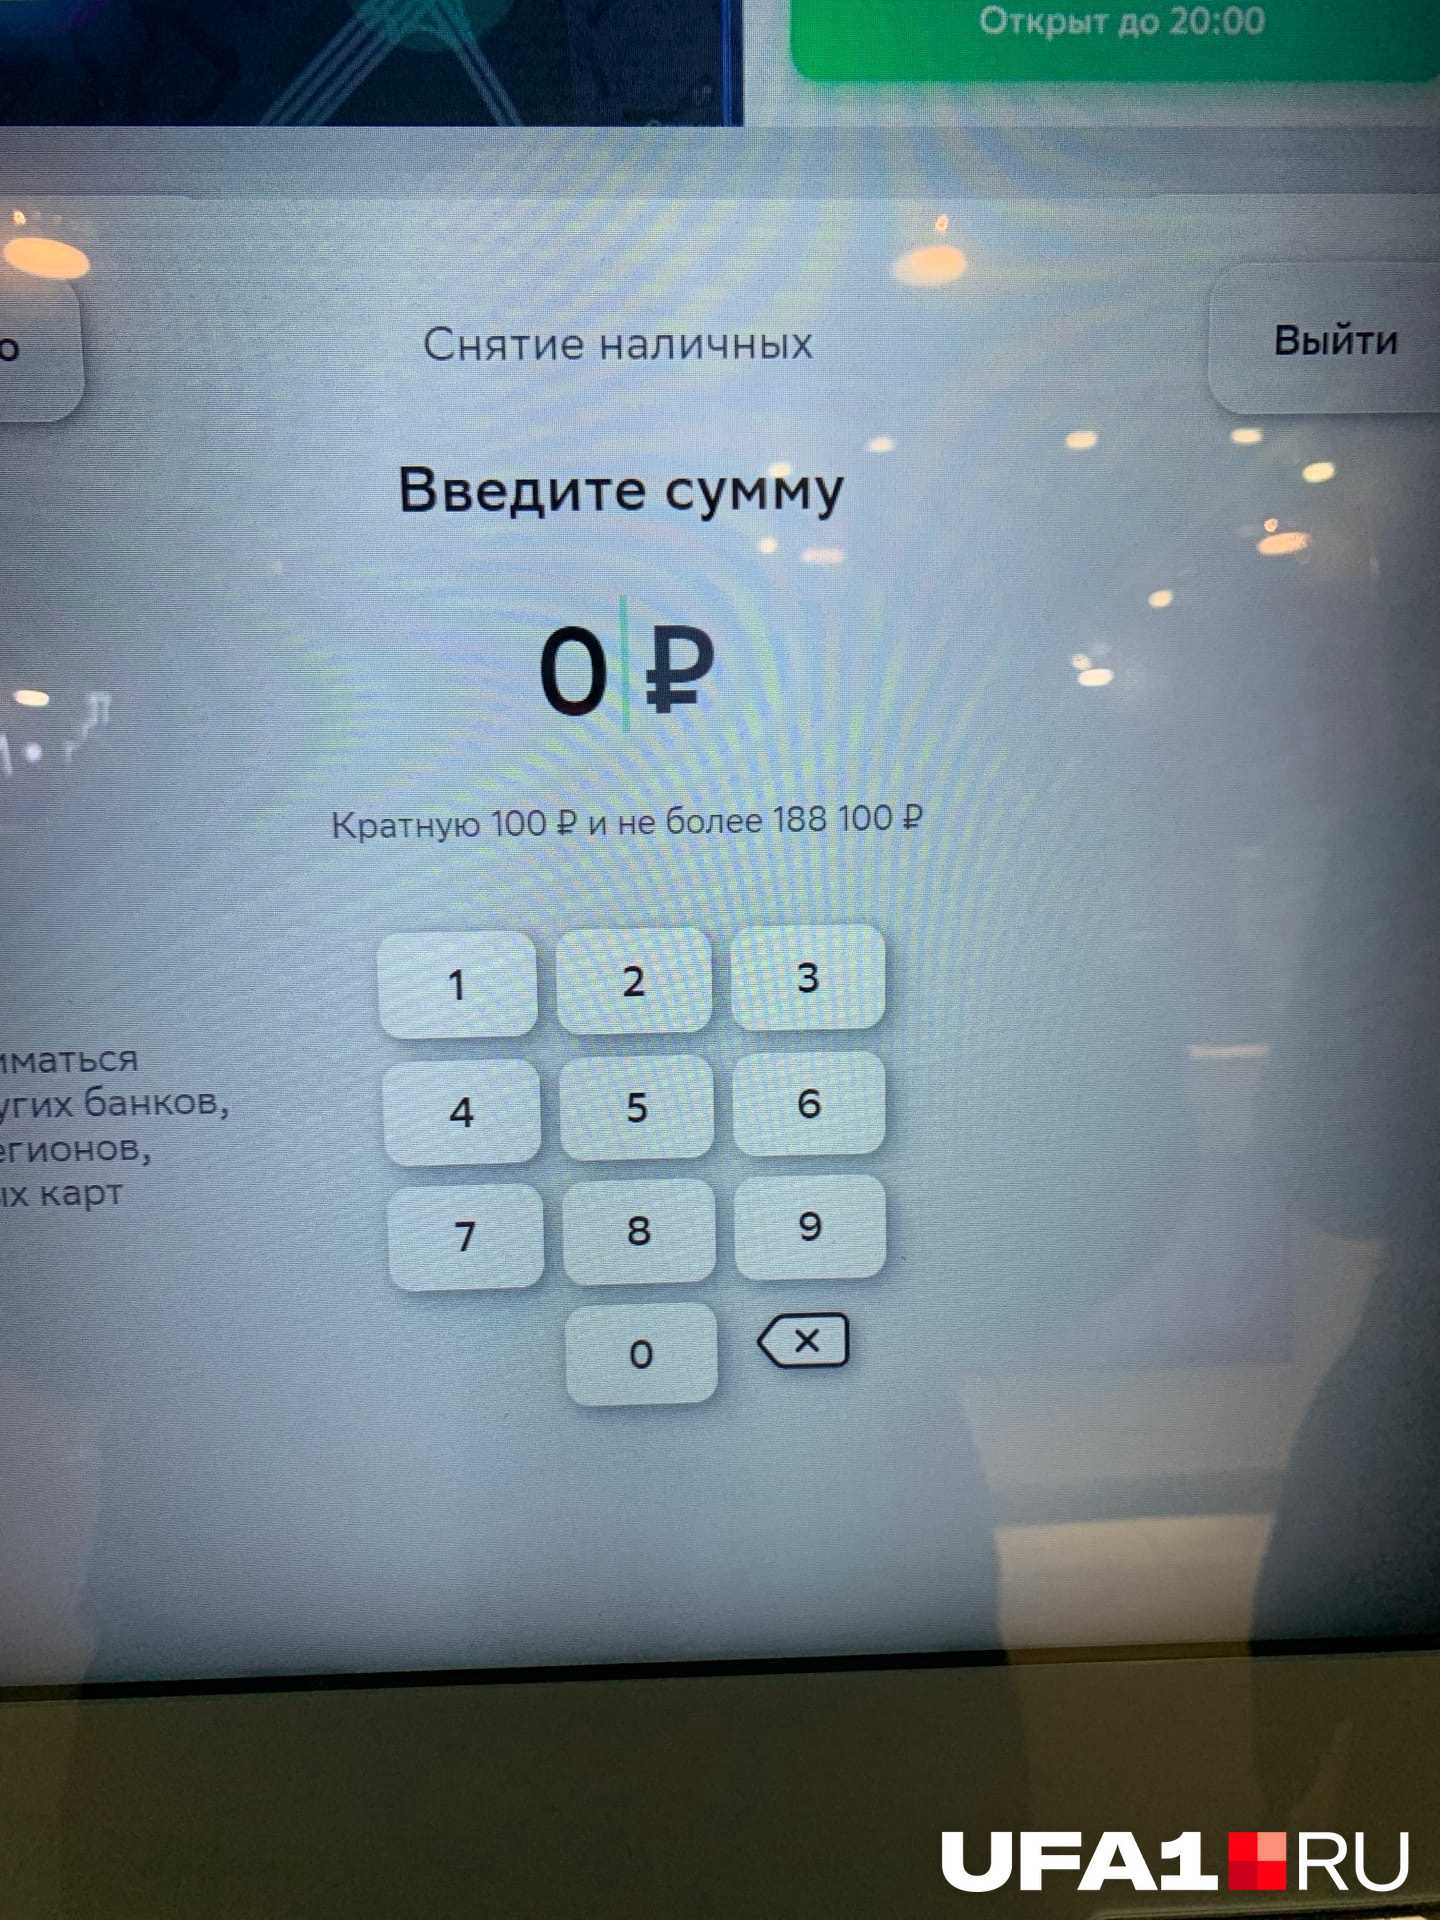 В первом банкомате можно снять сумму не более <nobr class="_">188 100</nobr> рублей